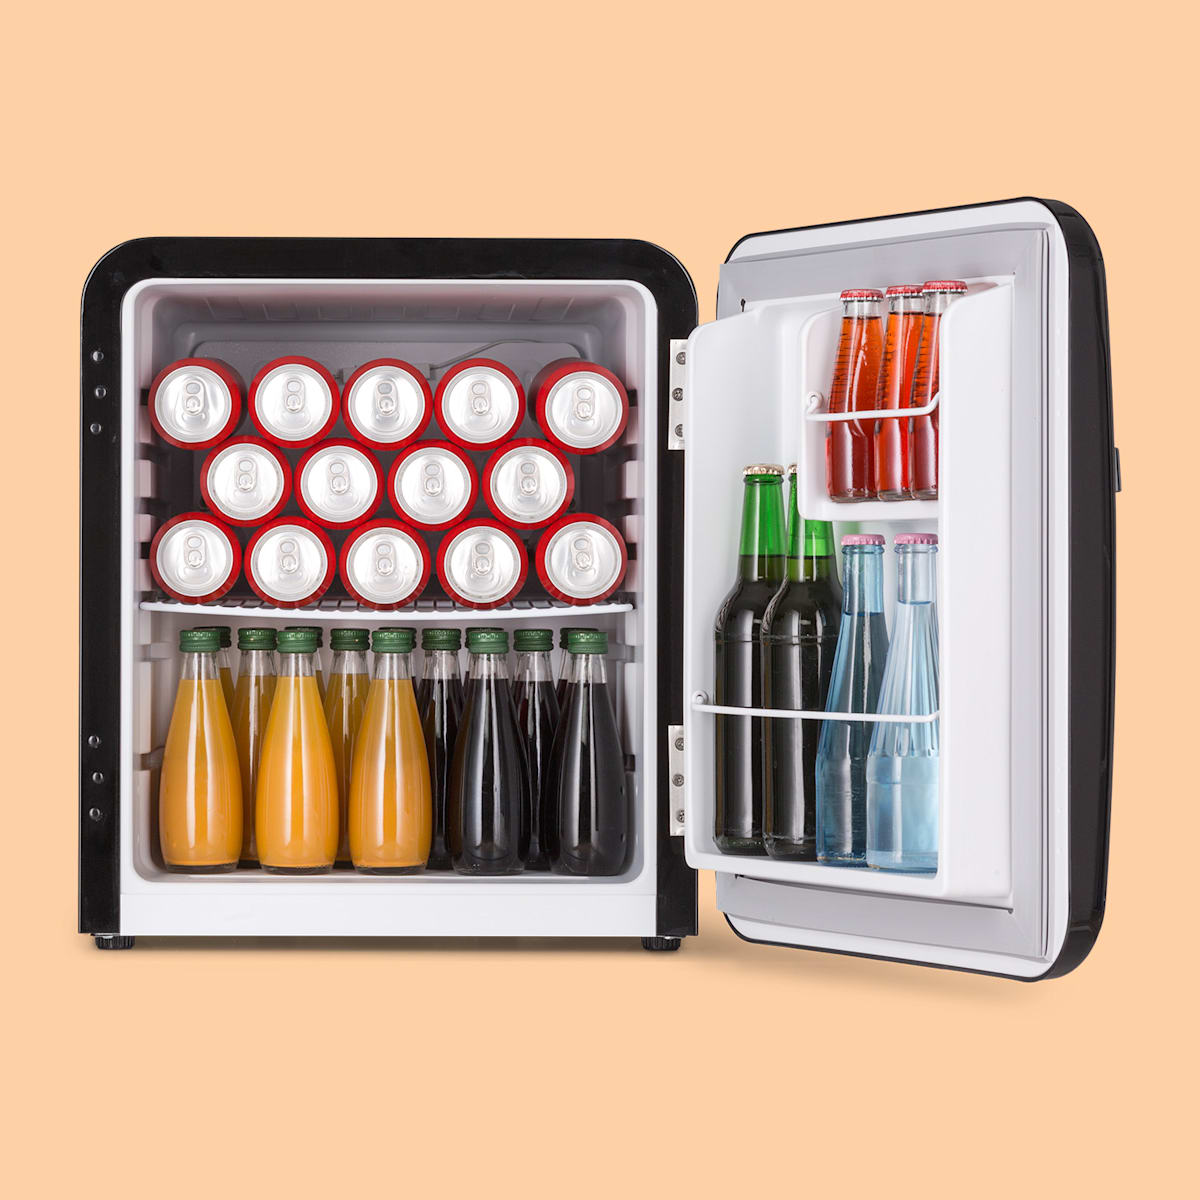 Audrey Mini Retro-Kühlschrank Minikühlschrank Getränkekühlschrank, Energieeffizienzklasse F, 48 Liter Fassungsvermögen, 2 Ebenen, Kühltemperatur: 0 - 10 °C